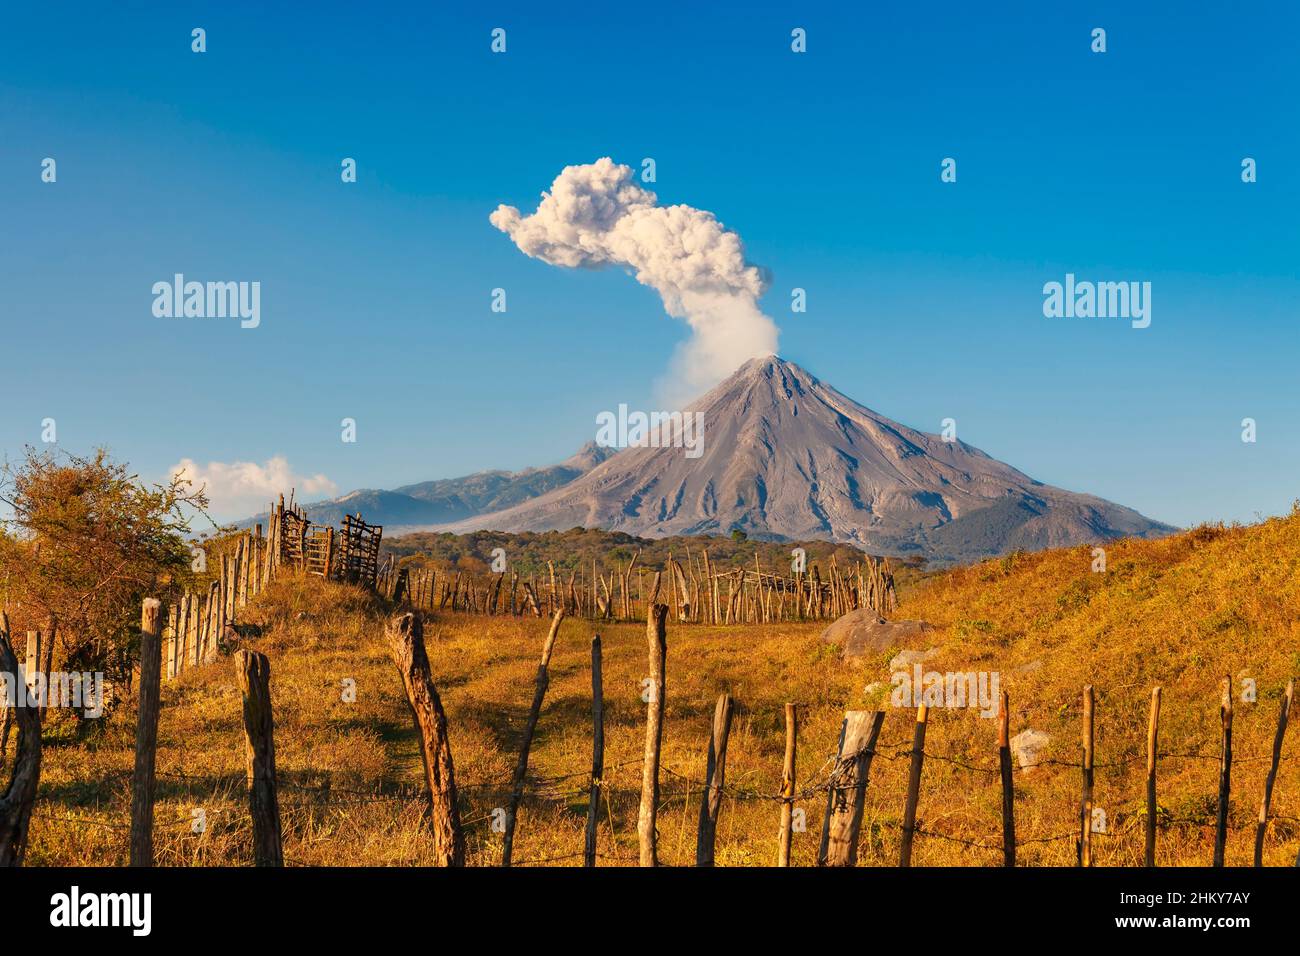 Volcano of Fire. Colima. Mexico, North America Stock Photo